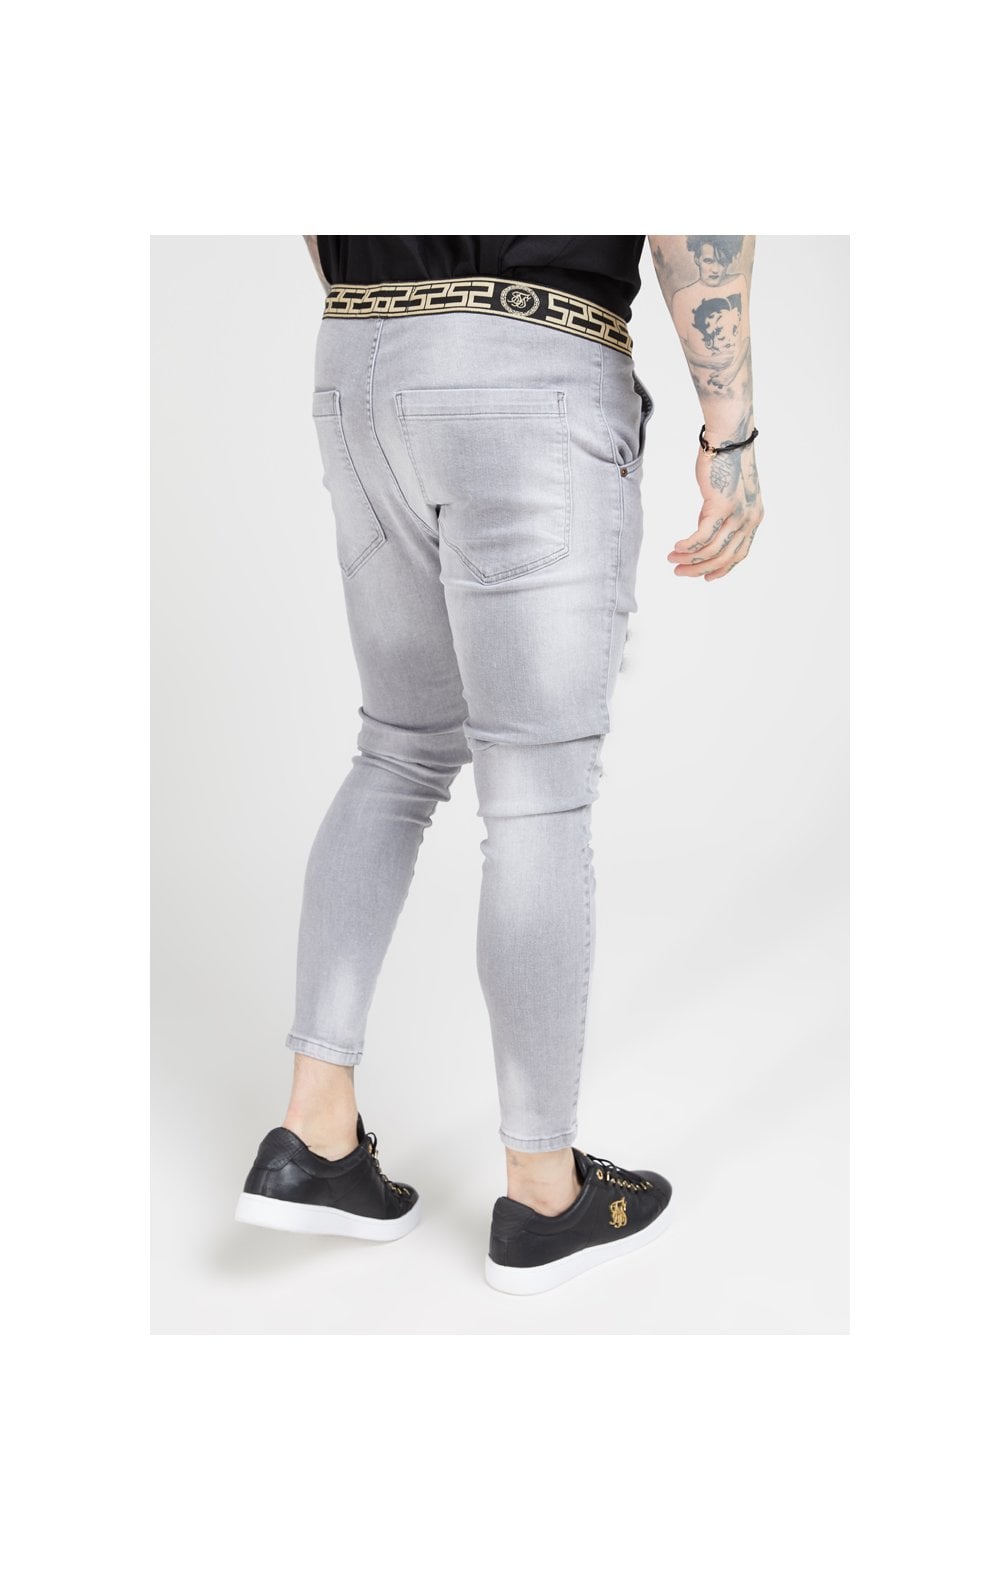 Zerrissene Jeans - Shorts Schmaler Gürtel Elastic SikSilk - Grau (2)